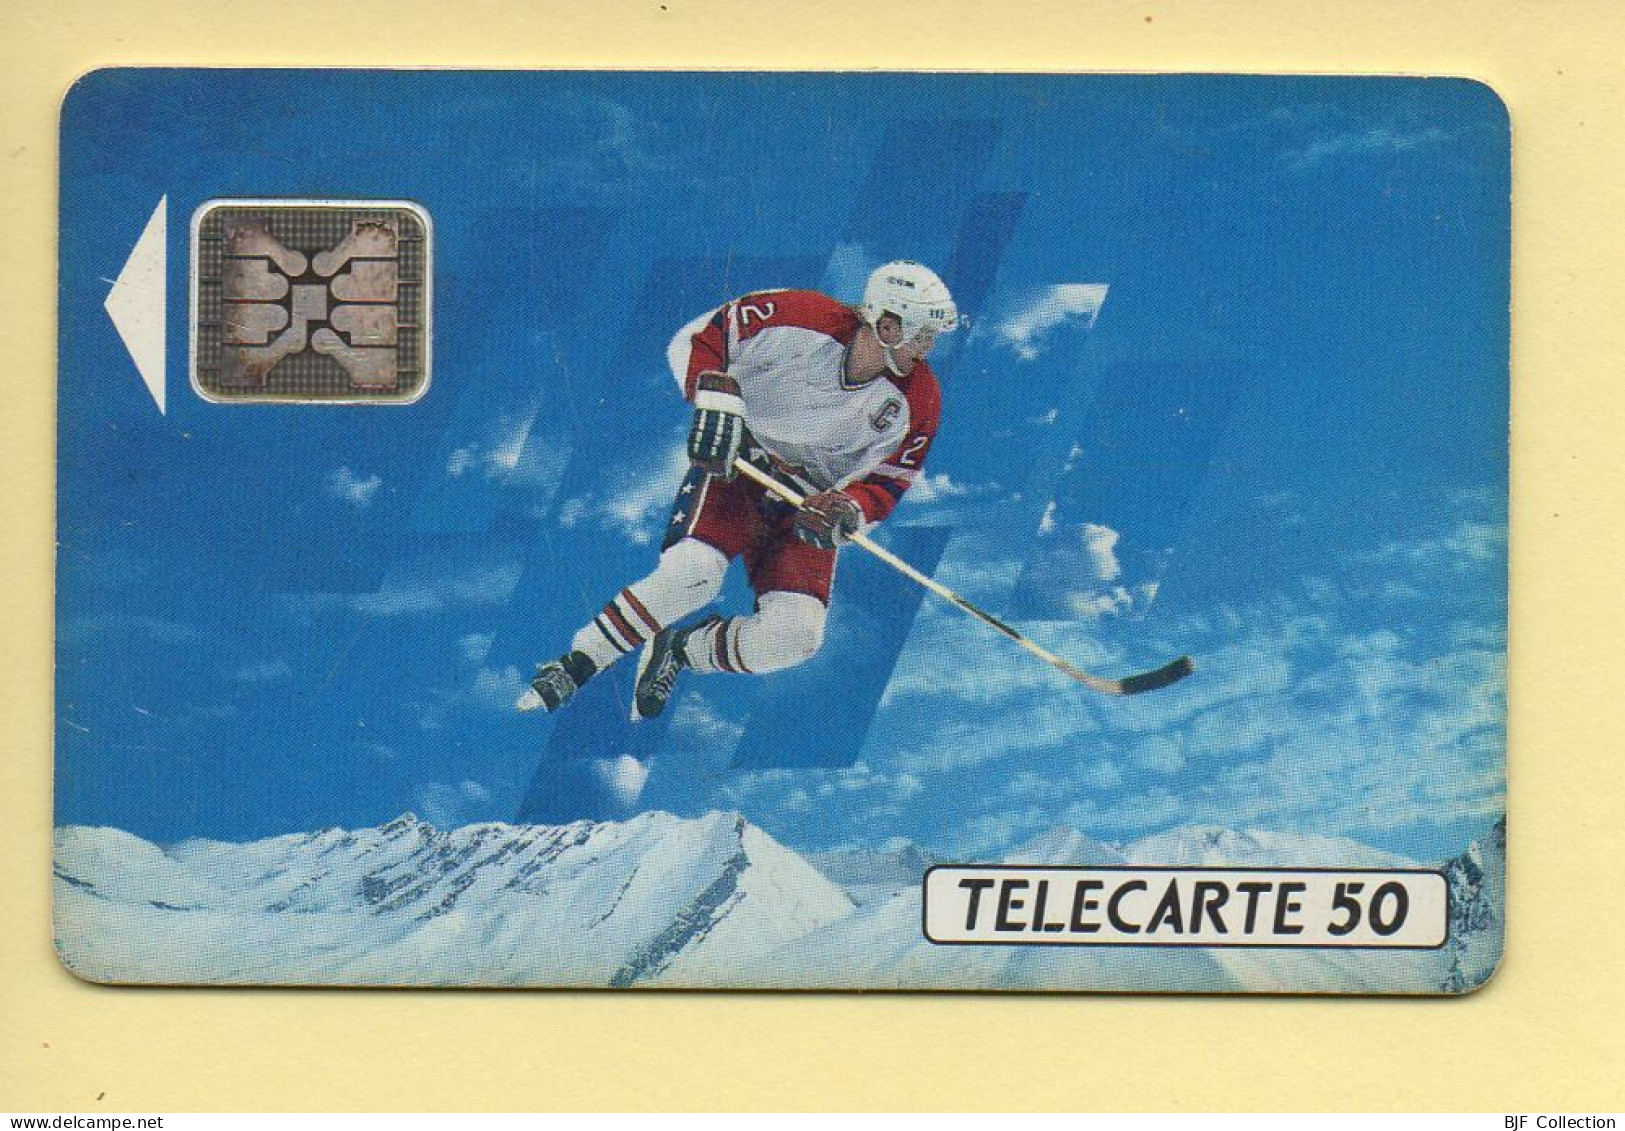 Télécarte 1991 : JOUEUR DE HOCKEY / 50 Unités / Numéro 32478 / 10-91 / Jeux Olympiques D'Hiver ALBERTVILLE 92 - 1991